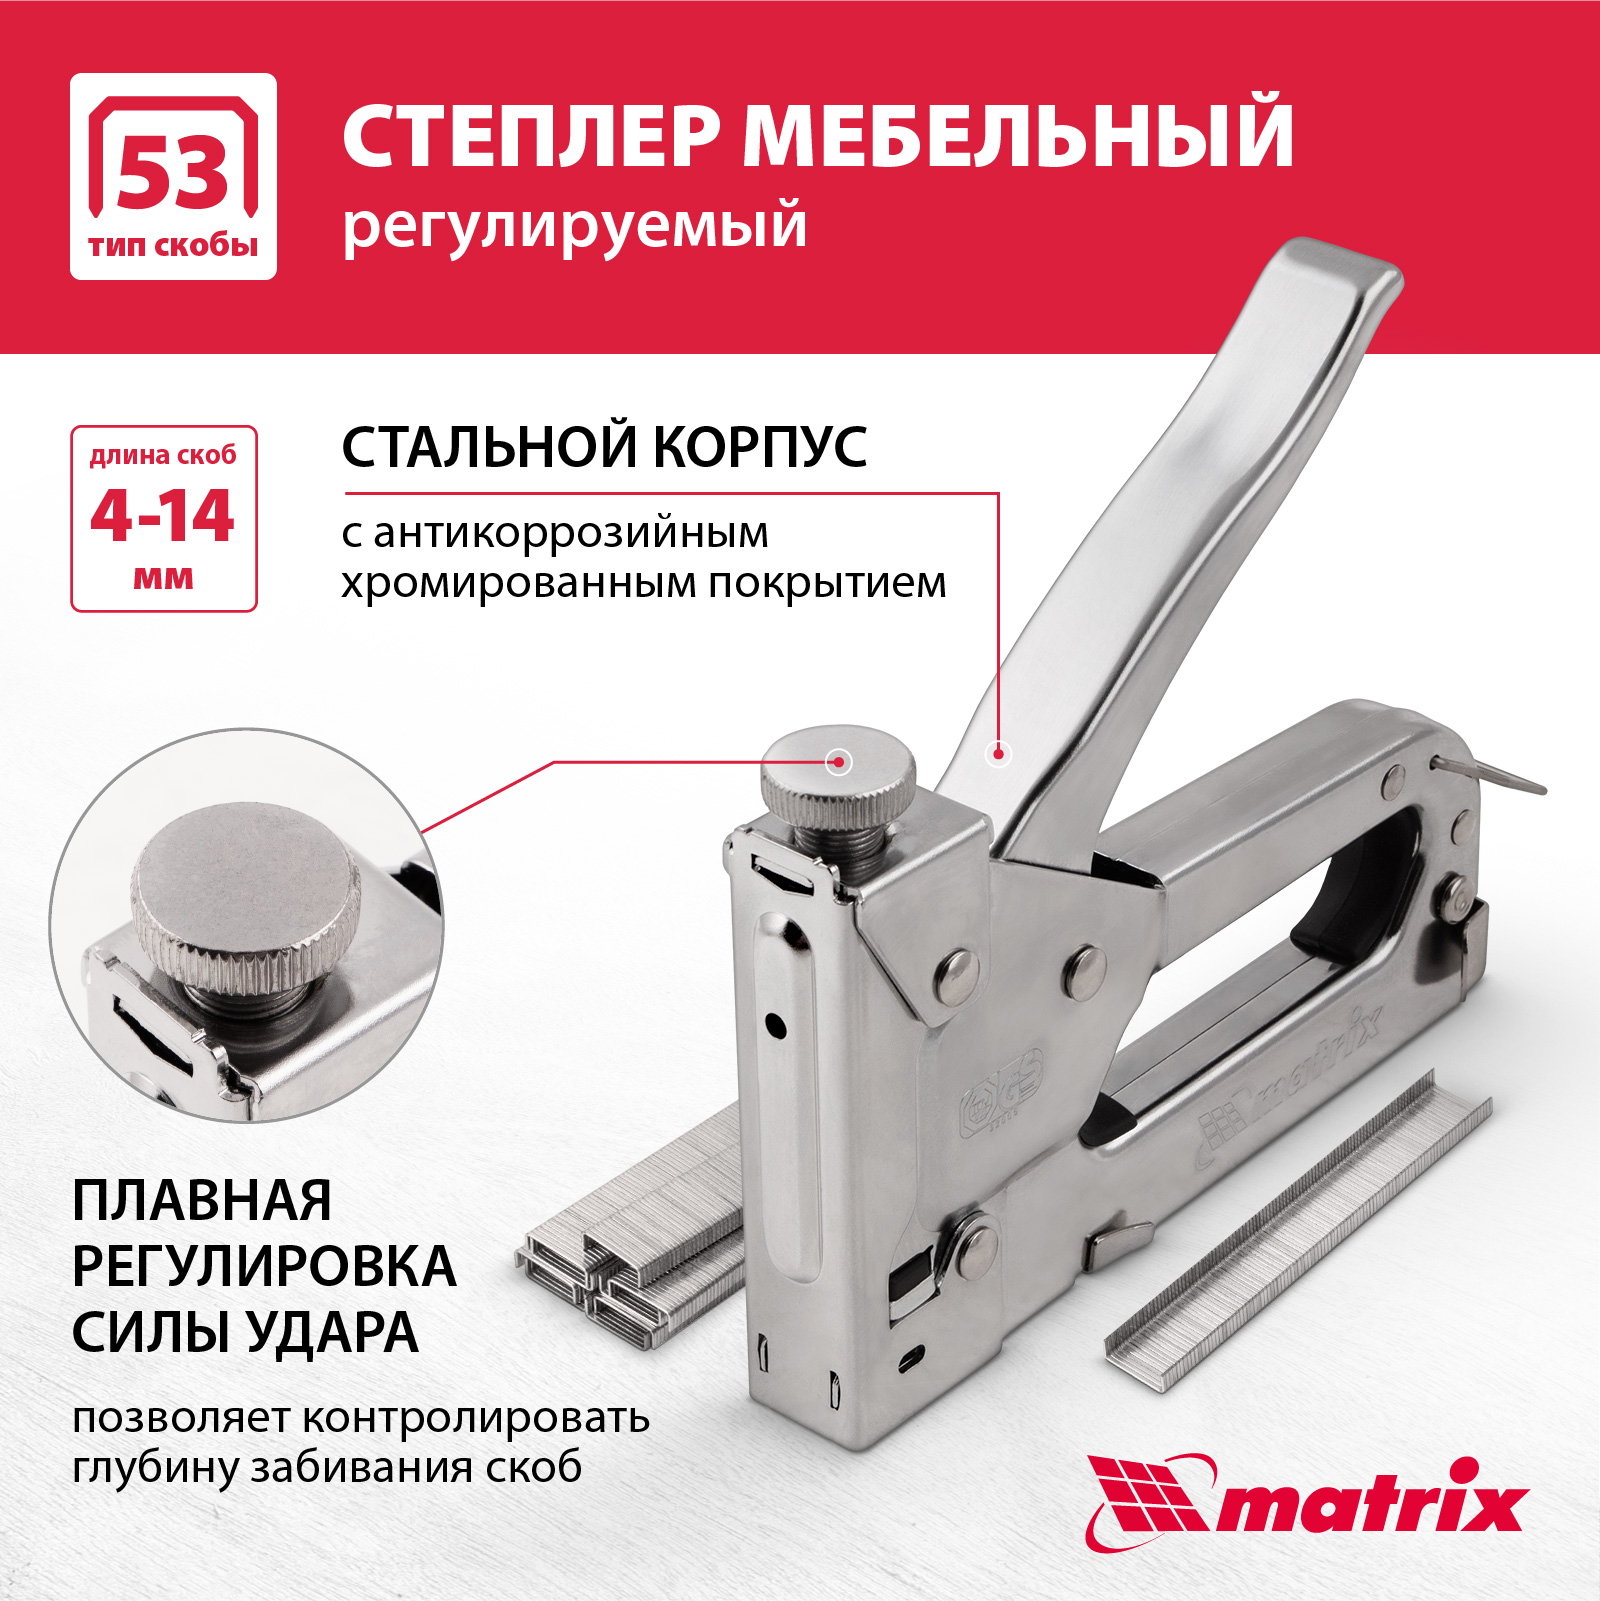 Степлер мебельный регулируемый MATRIX 40902 тип скобы 53, 4-14 мм